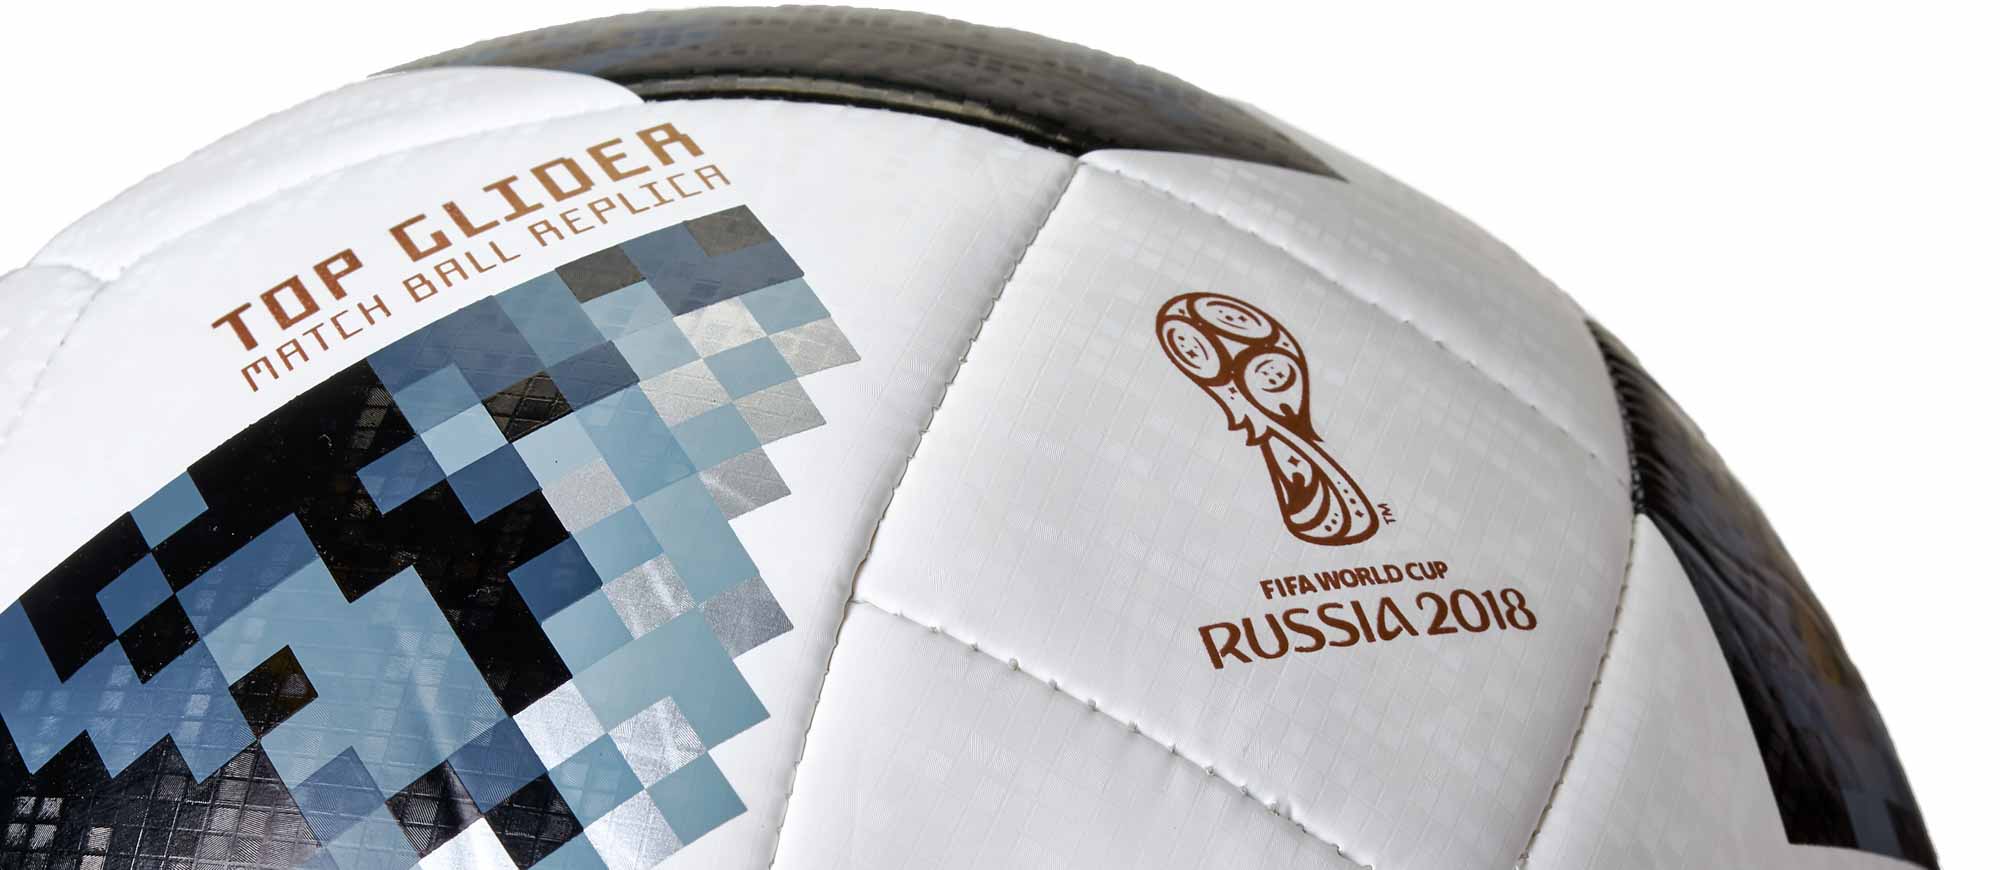 Adidas Telestar Ball Mexico Top Glider FIFA WC 2018 Color White Taglia  Palloni 5